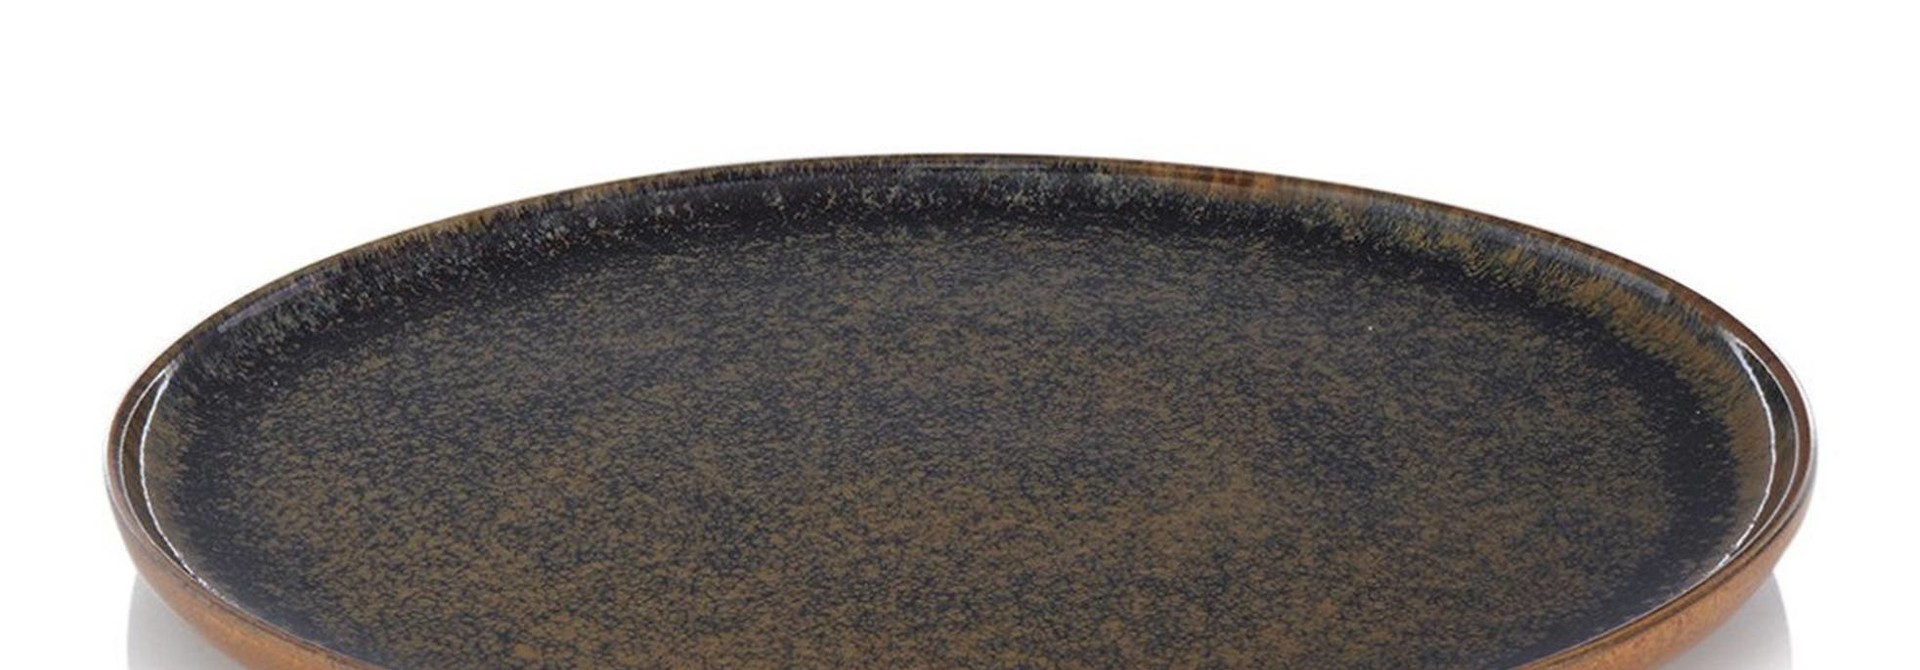 Oberfläche Teller aus Steingut 27 cm